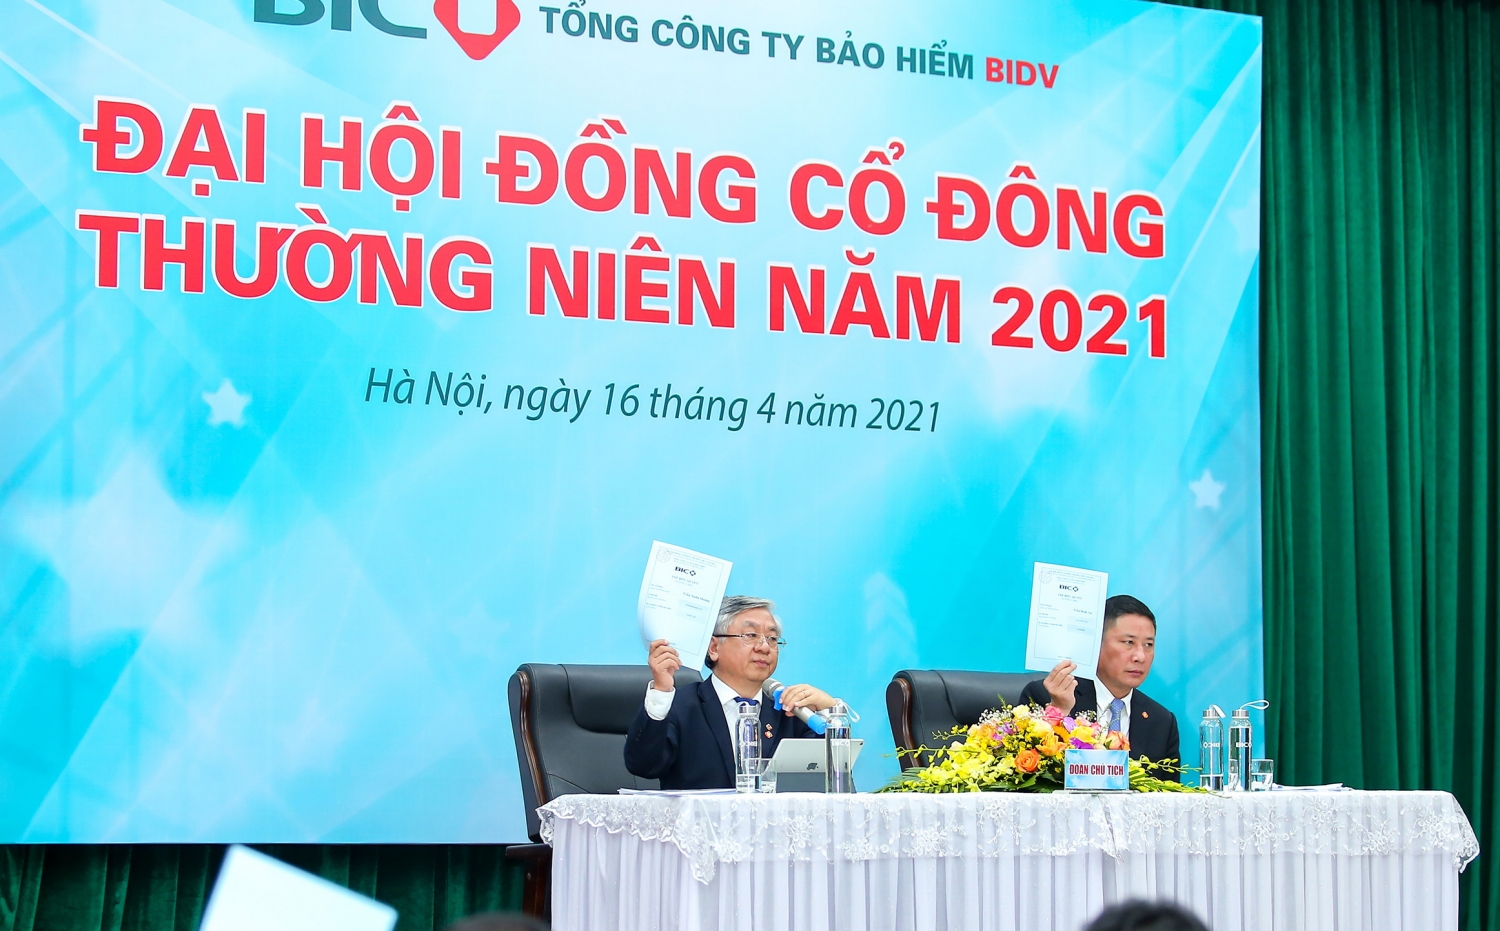 Bảo hiểm BIDV (BIC) tổ chức Đại hội đồng cổ đông thường niên năm 2021